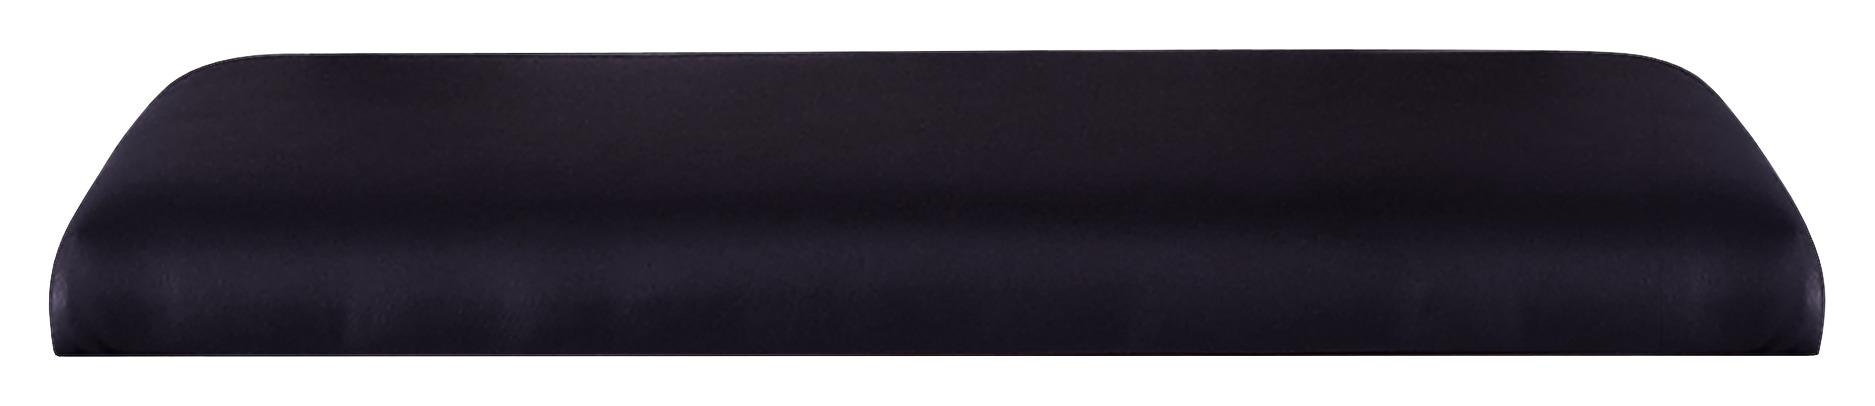 Sitzkissen für Garderobenbank Kashmir New Schwarz 84x37 cm - Schwarz, MODERN, Textil (84/5/37cm)